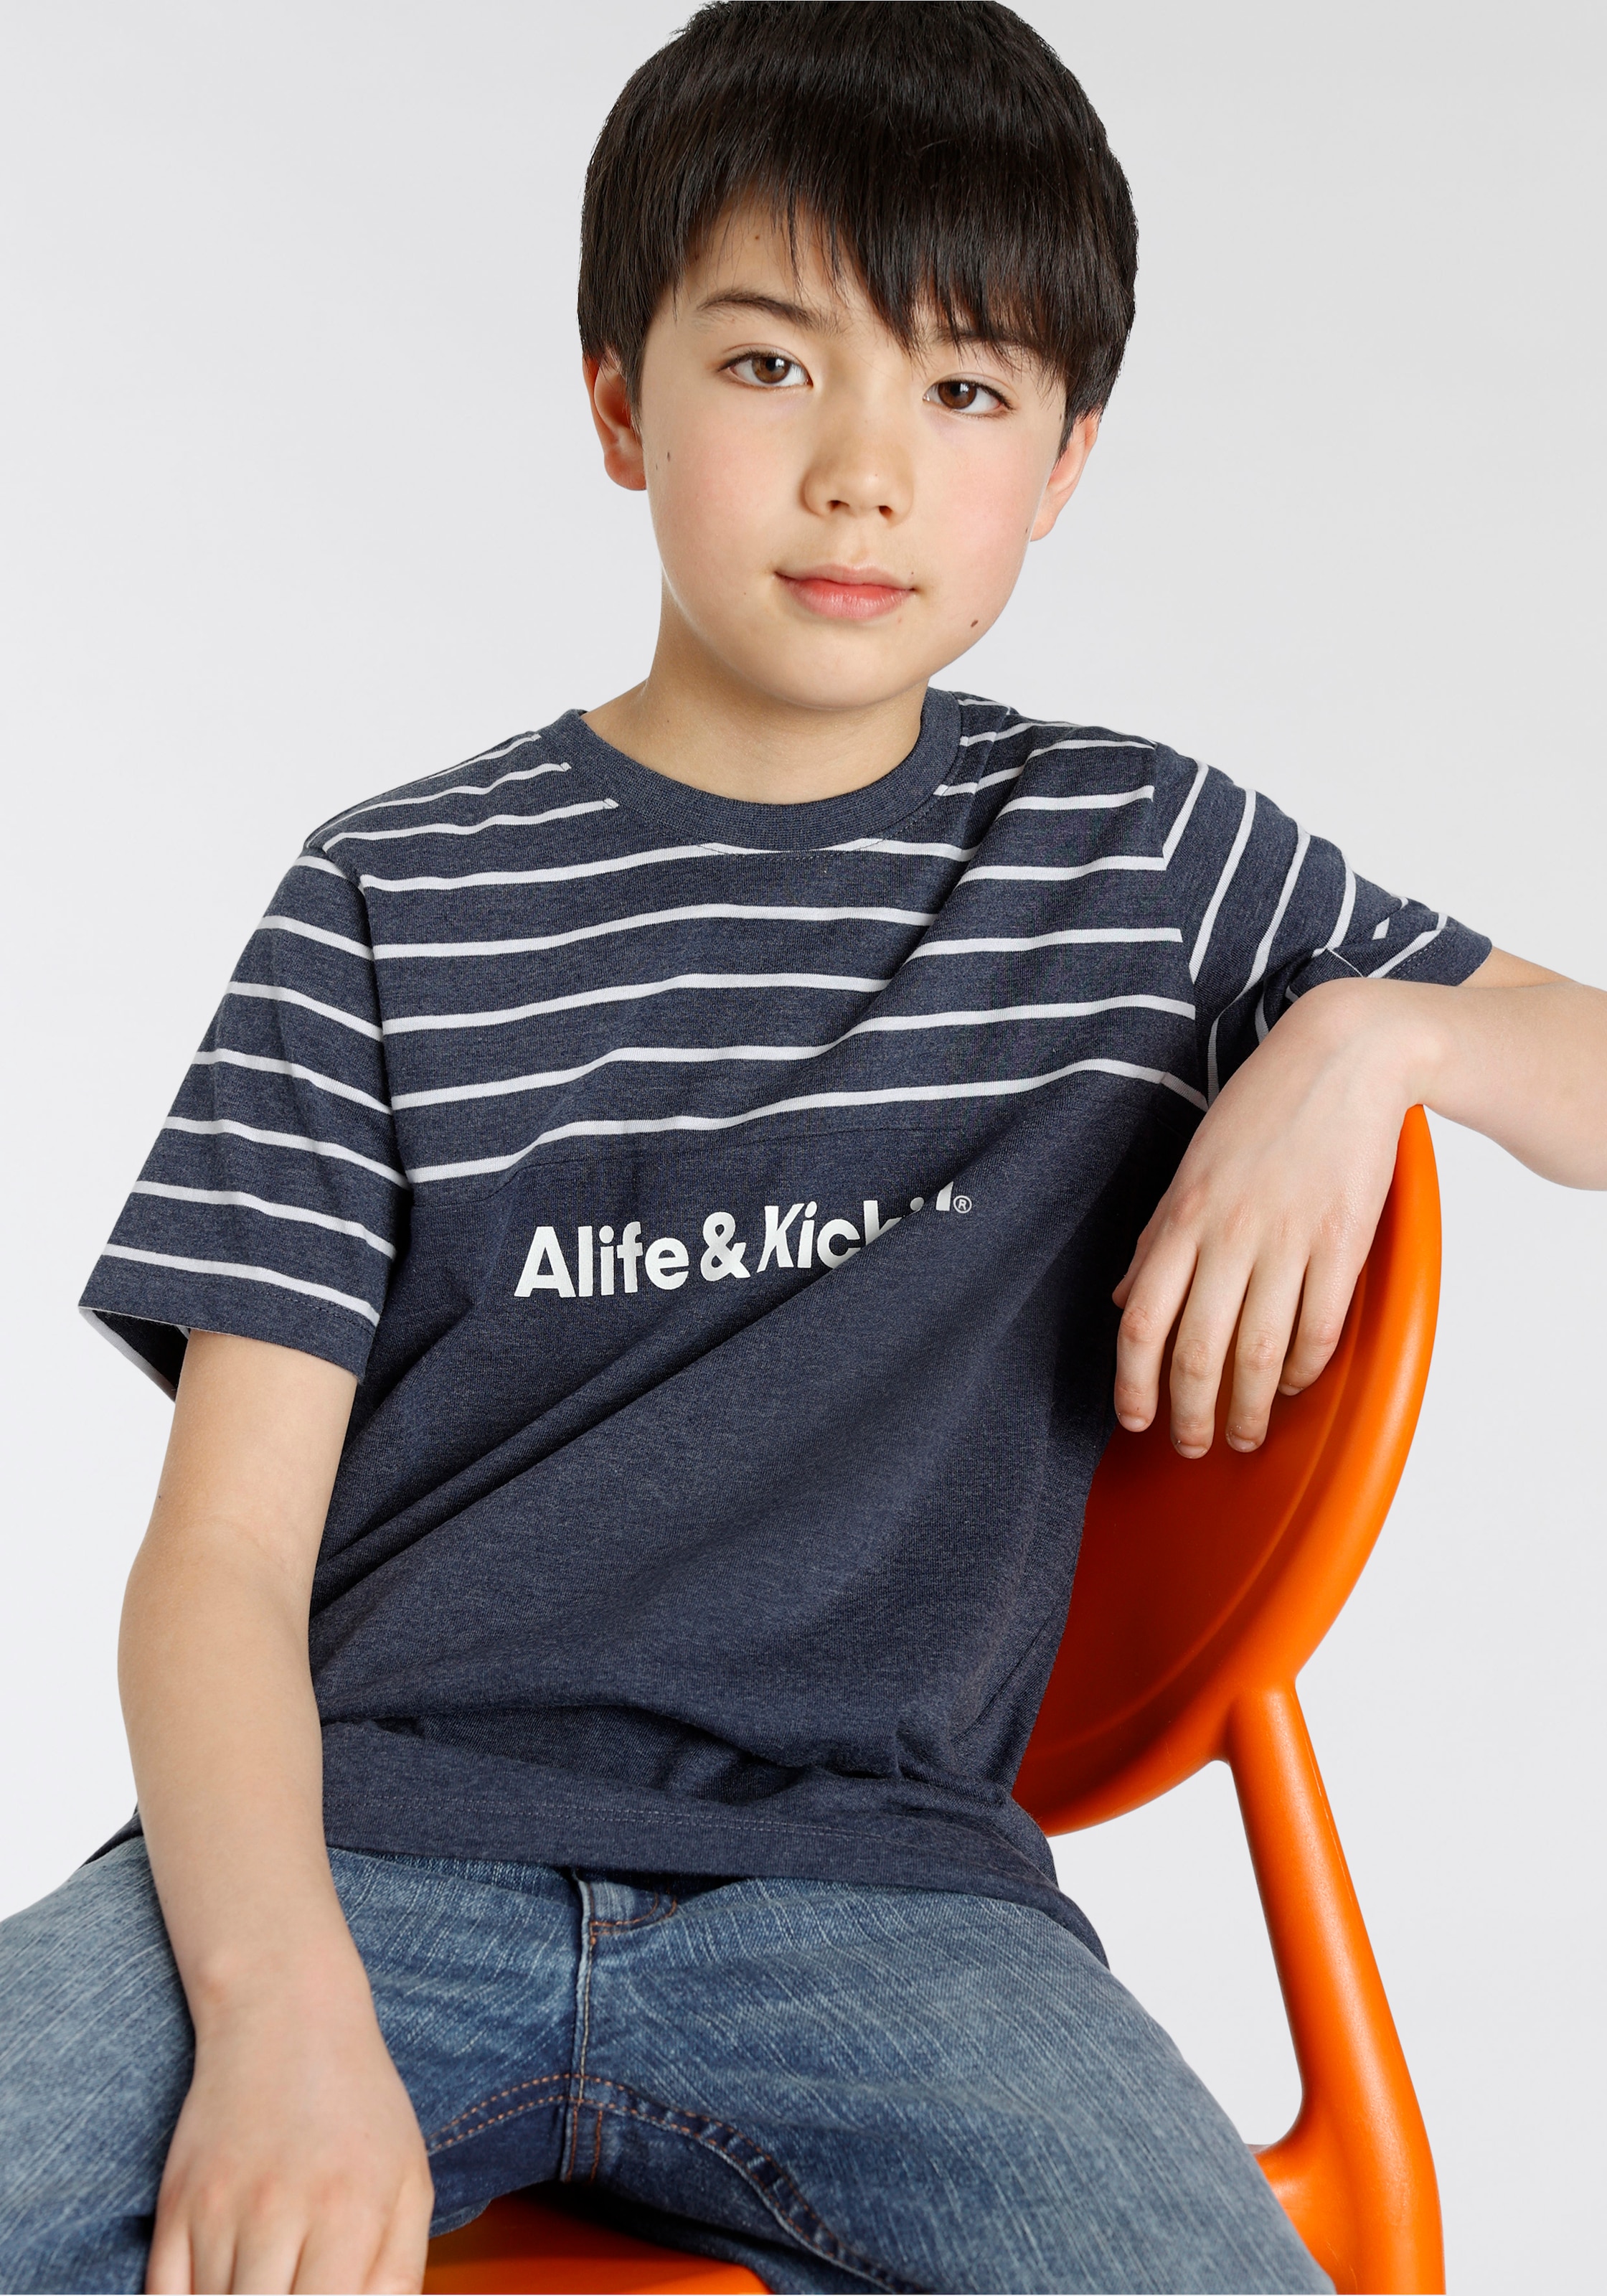 Alife & und NEUE Ringel, bei melierter garngefärbten »Colorblocking«, MARKE! in T-Shirt Kickin Qualität